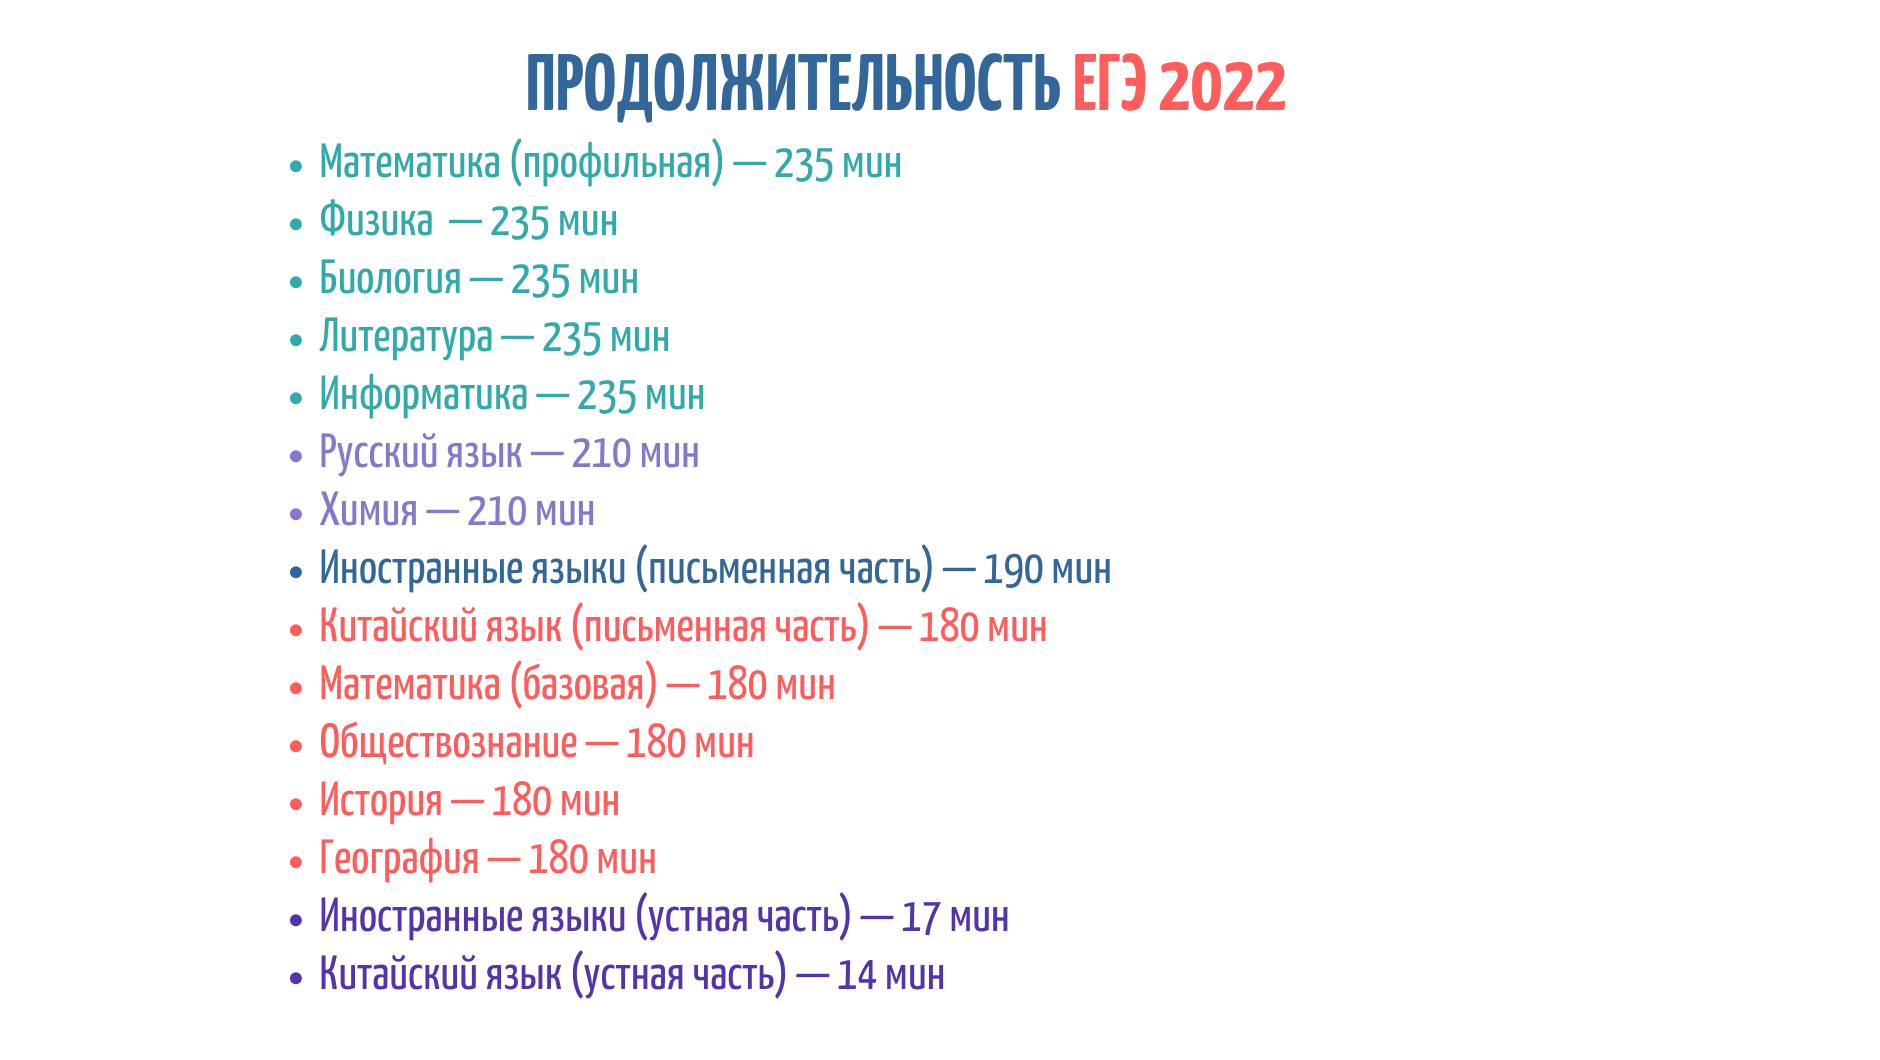 Утверждено единое расписание и продолжительность проведения ЕГЭ в 2021 году  - Техэксперт